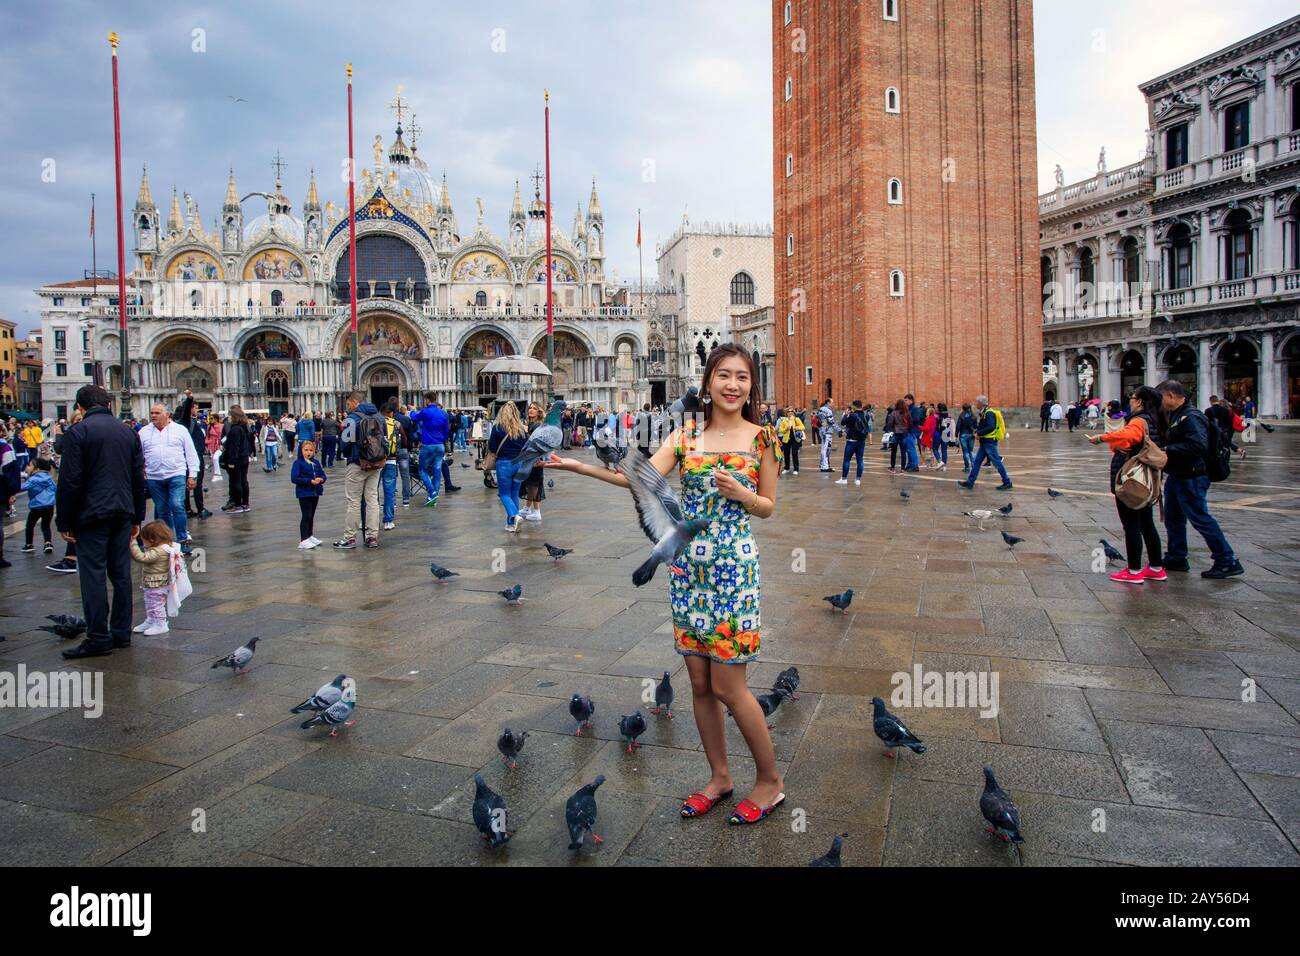 Ein chinesischer Tourist posiert mit Tauben an einem regnerischen Tag vor dem Markusdom. Markusplatz. Venedig. Italien Stockfoto